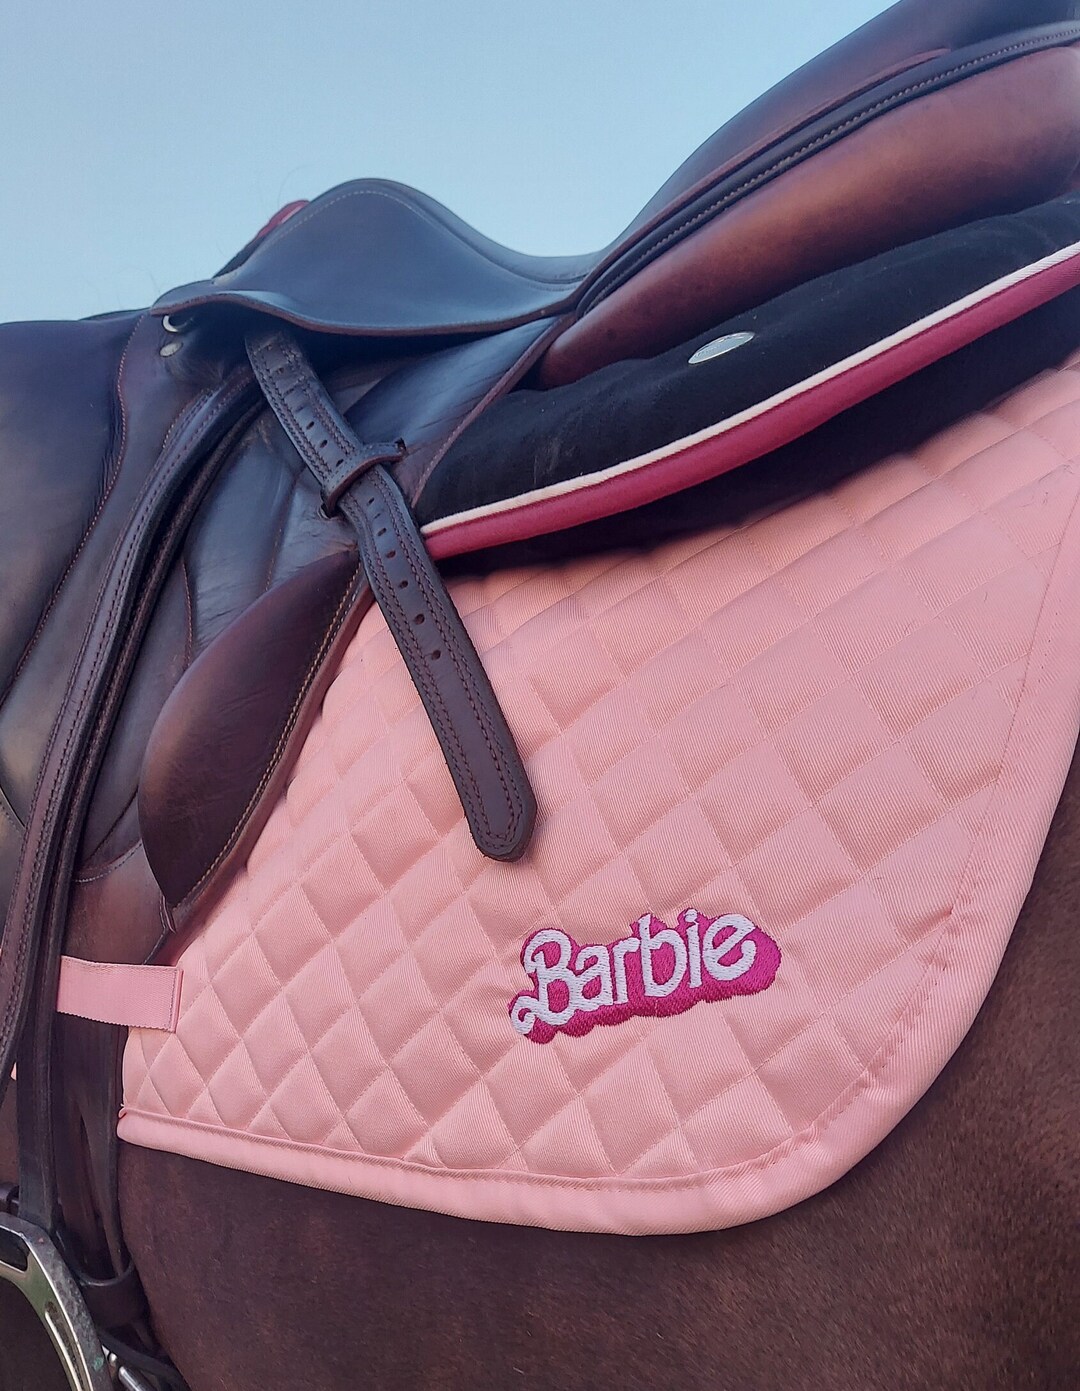 The Barby Mini Saddle Bag